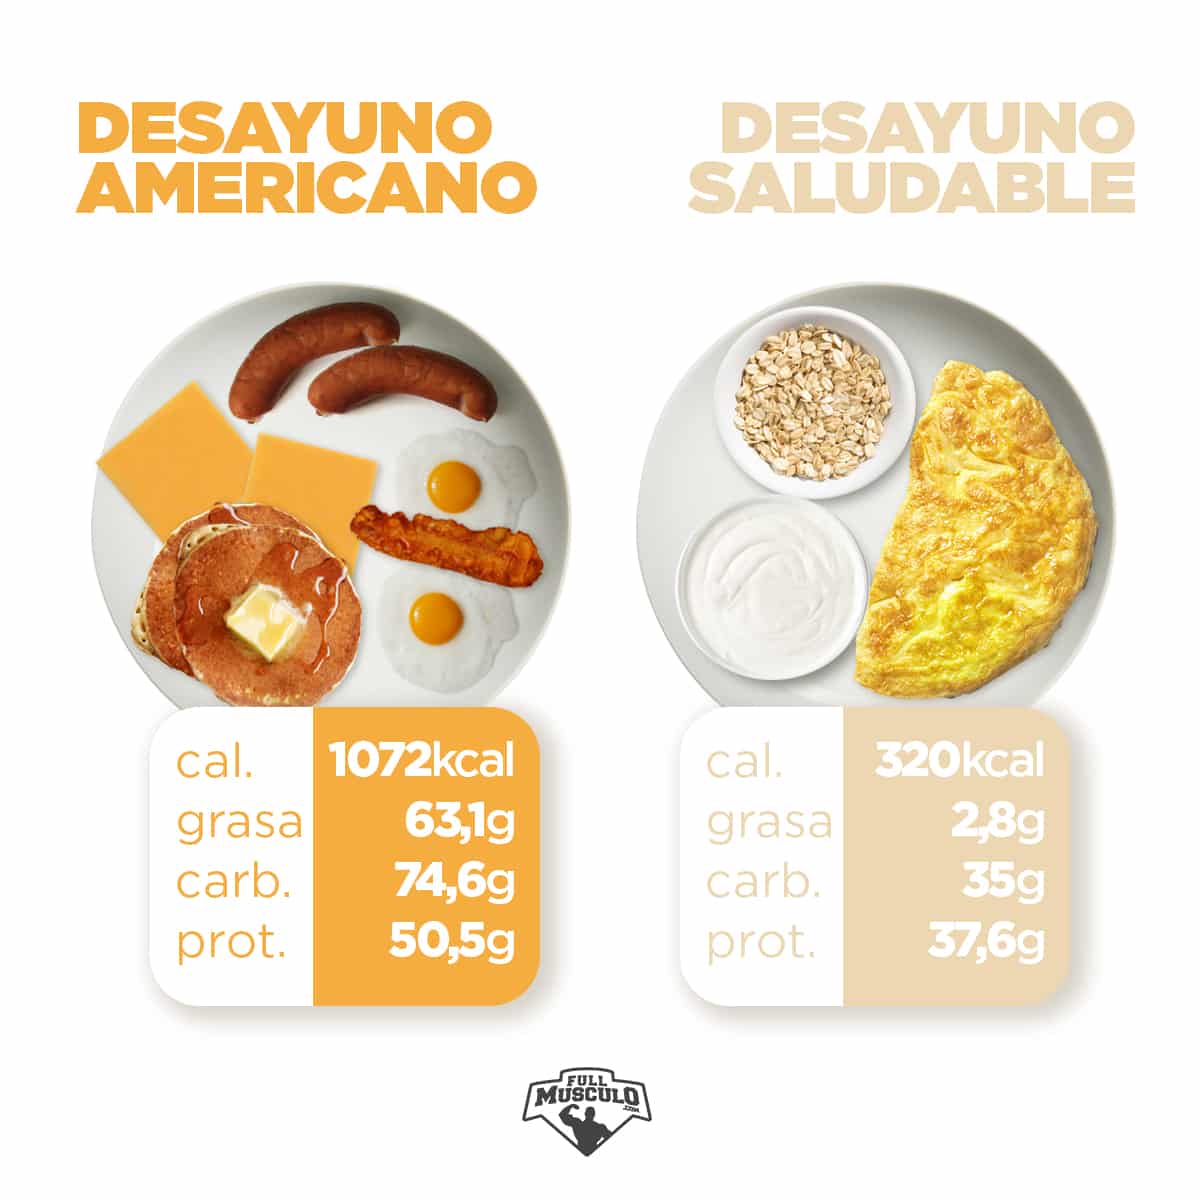 desayuno SALUDABLE VS AMERICANO